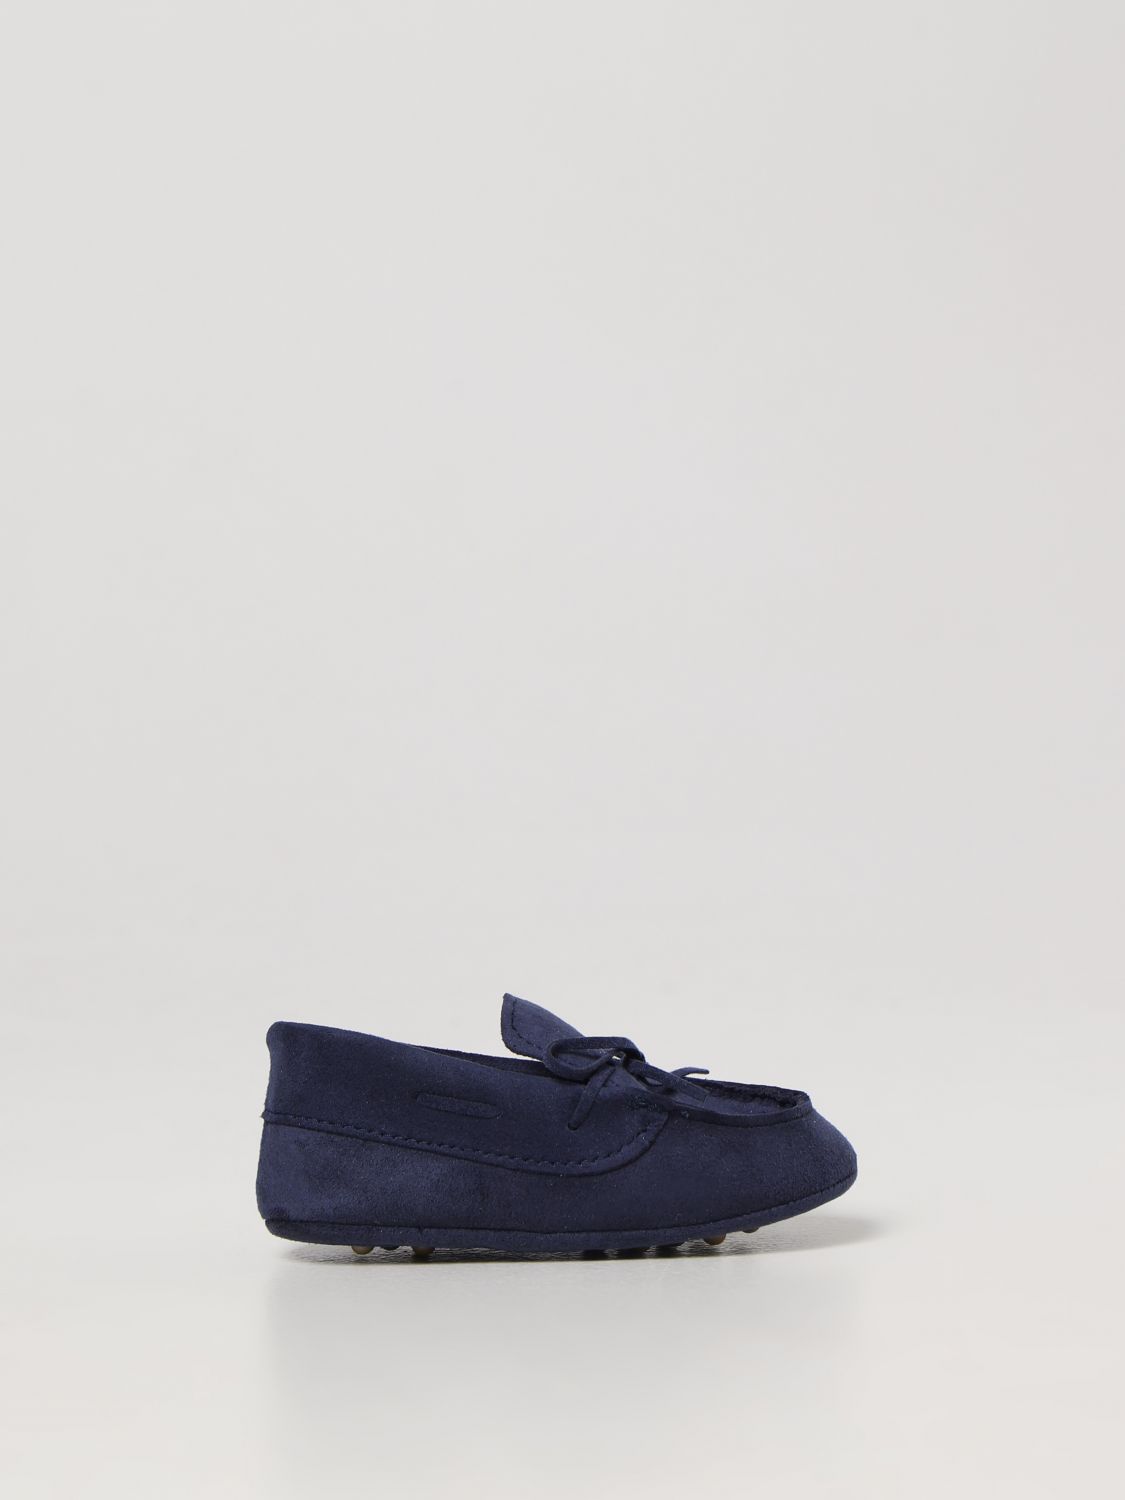 Colori Chiari Babies' Schuhe  Kinder Farbe Blau In Blue